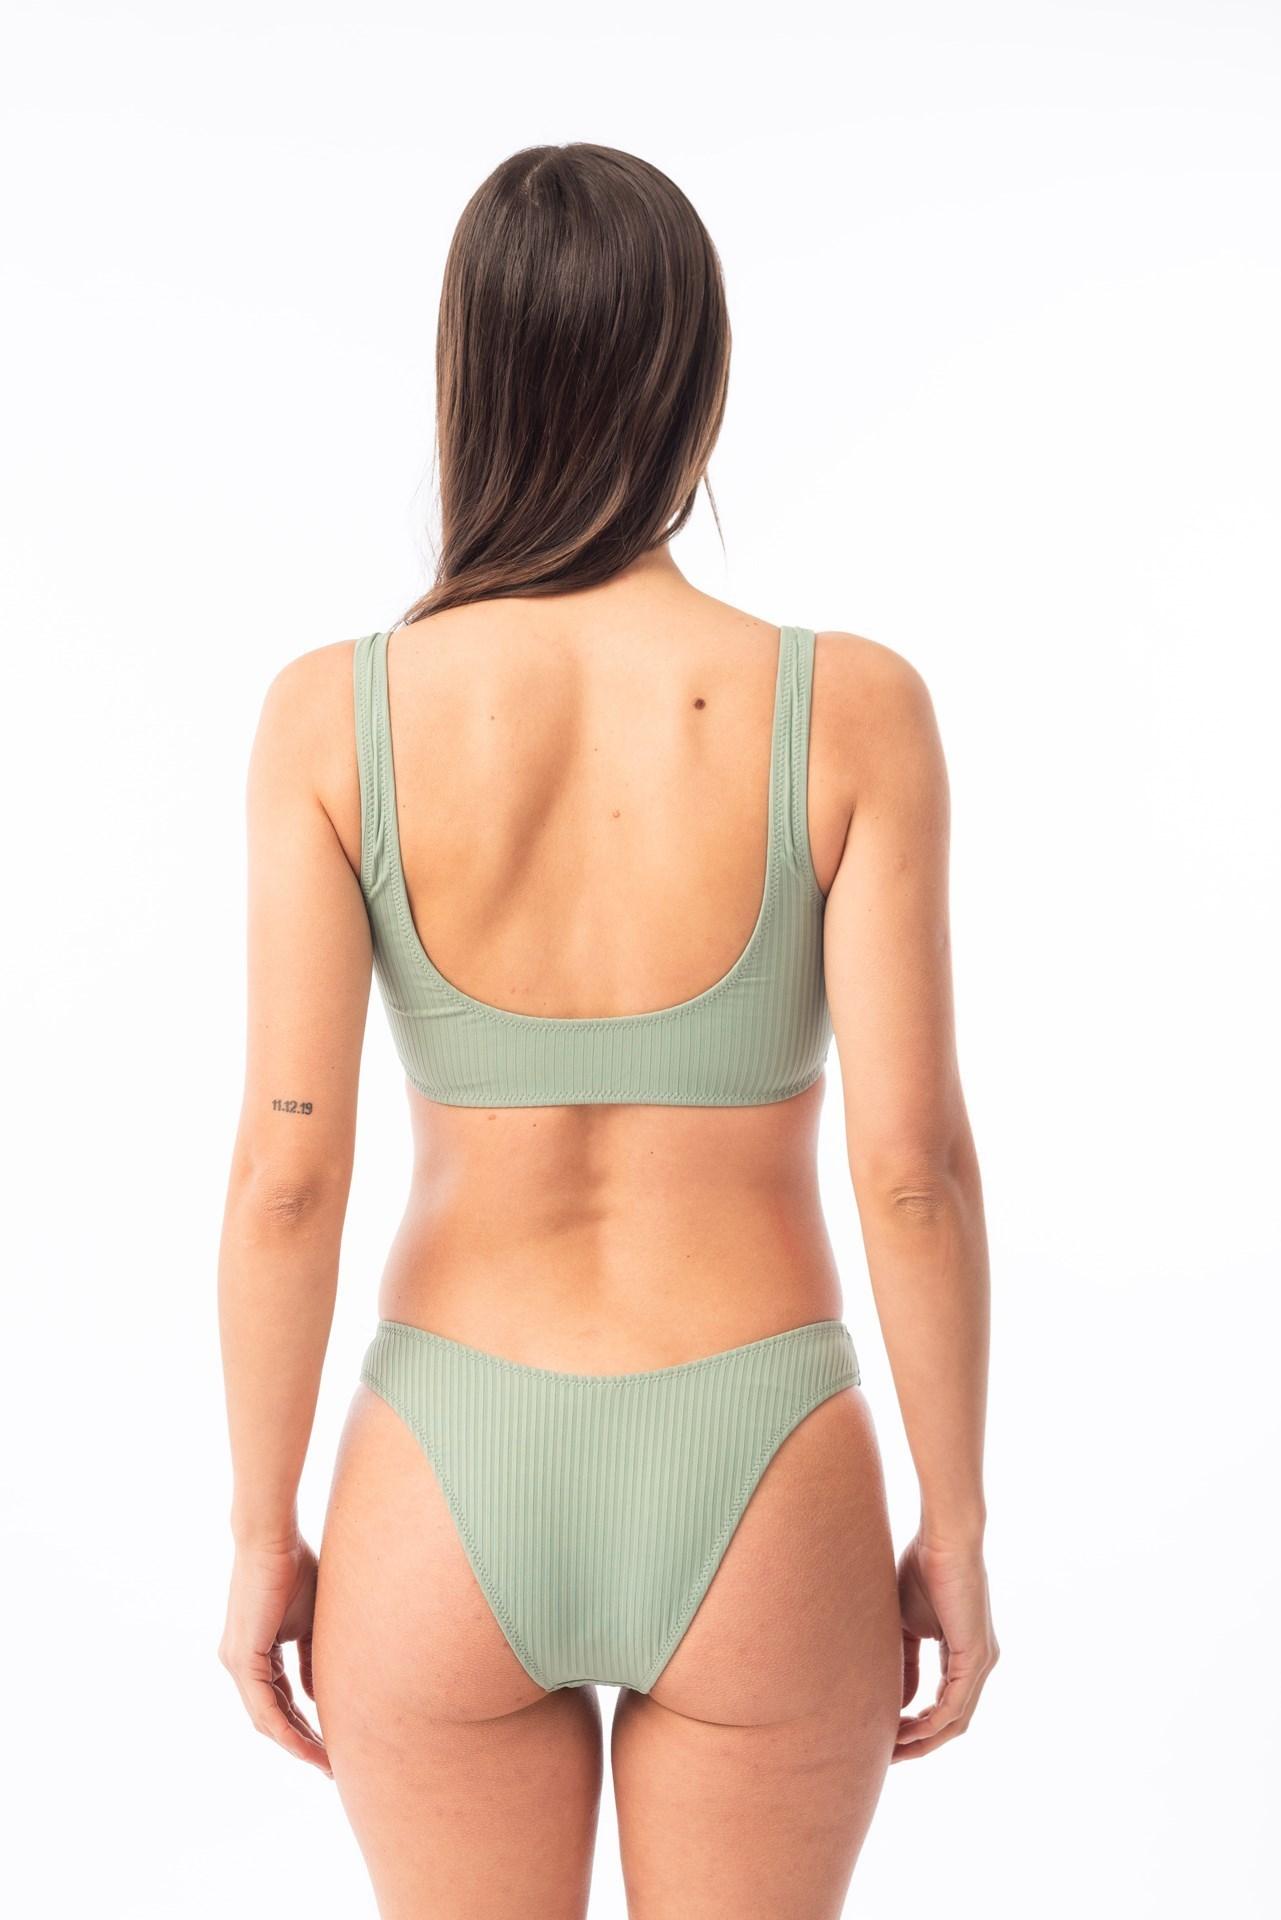 Paraiso- Bikini Top con Argollas verde agua s